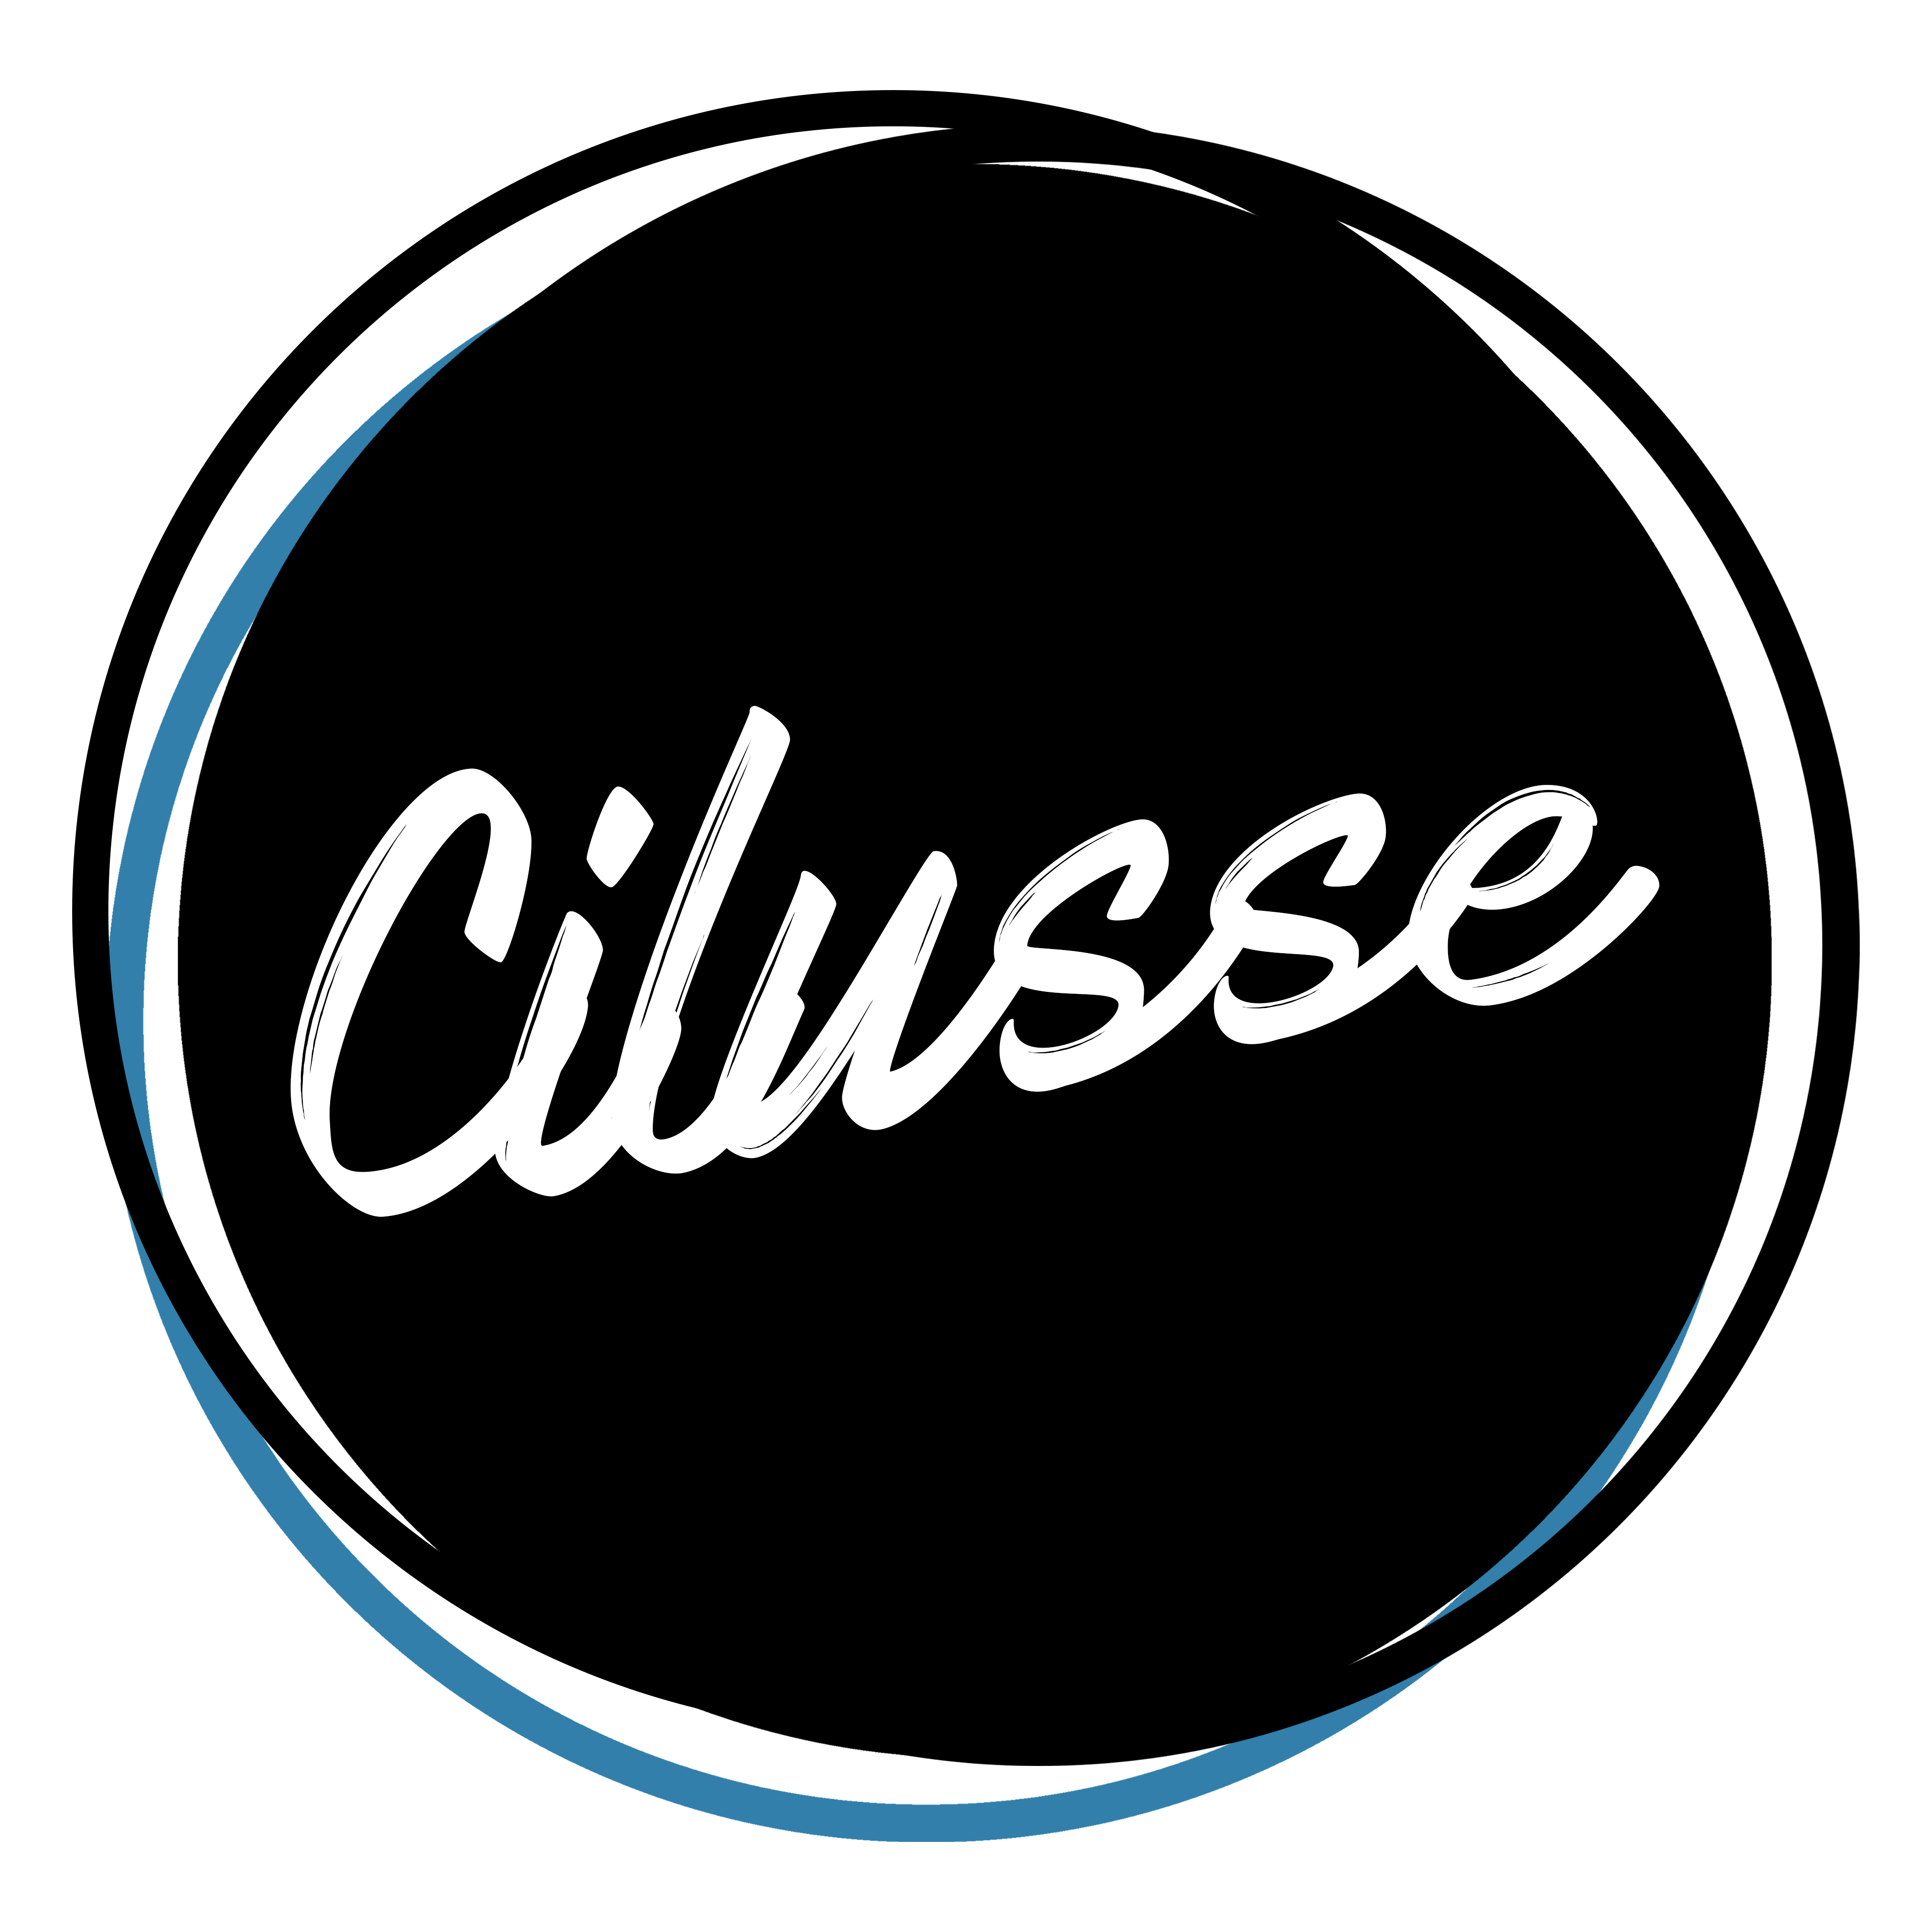 Cilusse logo